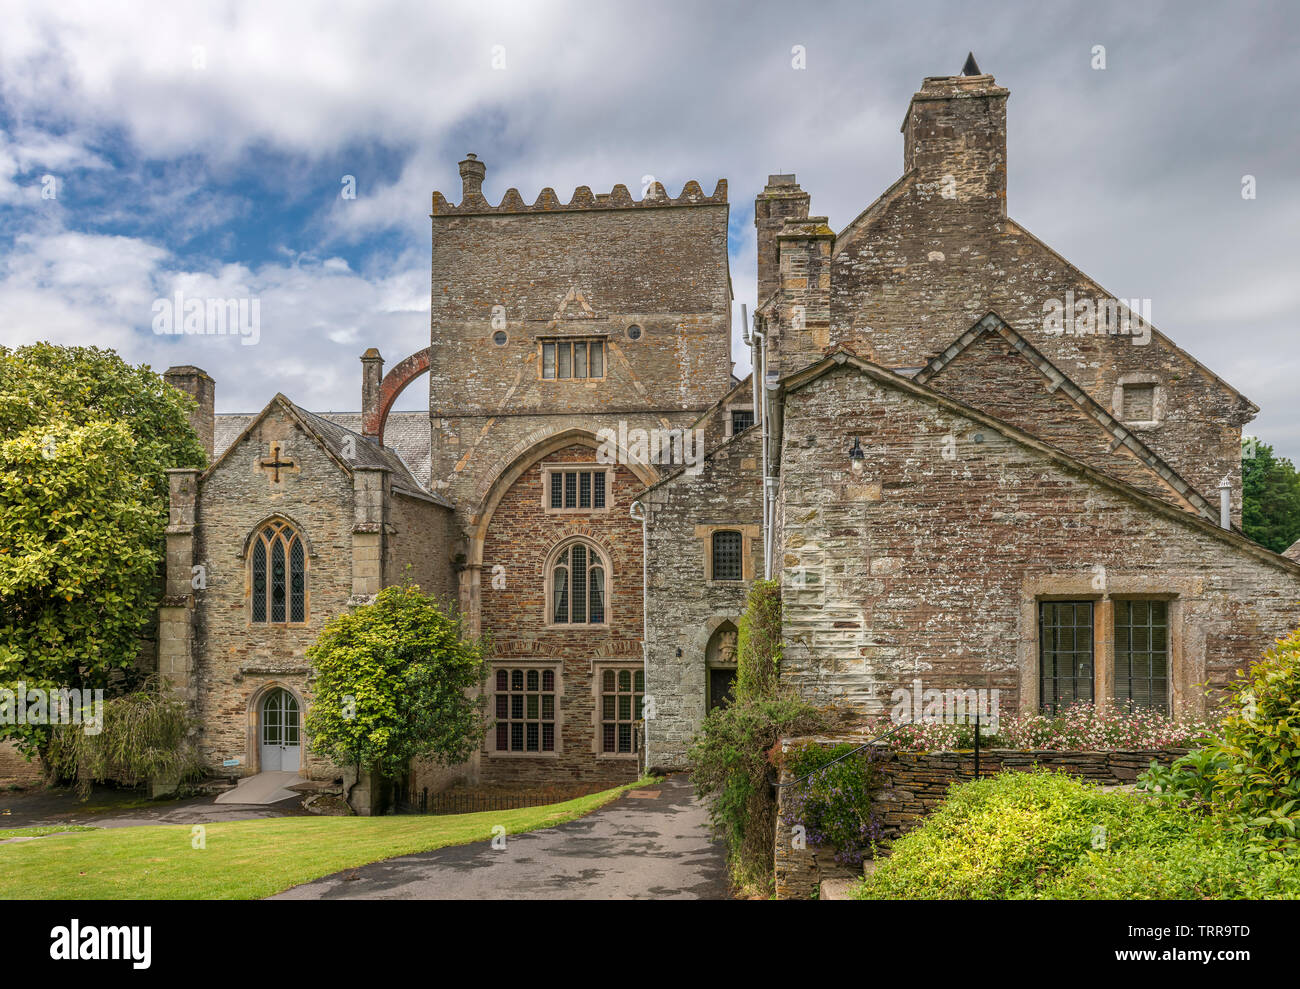 Comenzando como una abadía cisterciense, Buckland Abbey fue luego convertida en una casa cada hogar de Sir Richard Grenville y Sir Francis Drake. Nowada Foto de stock